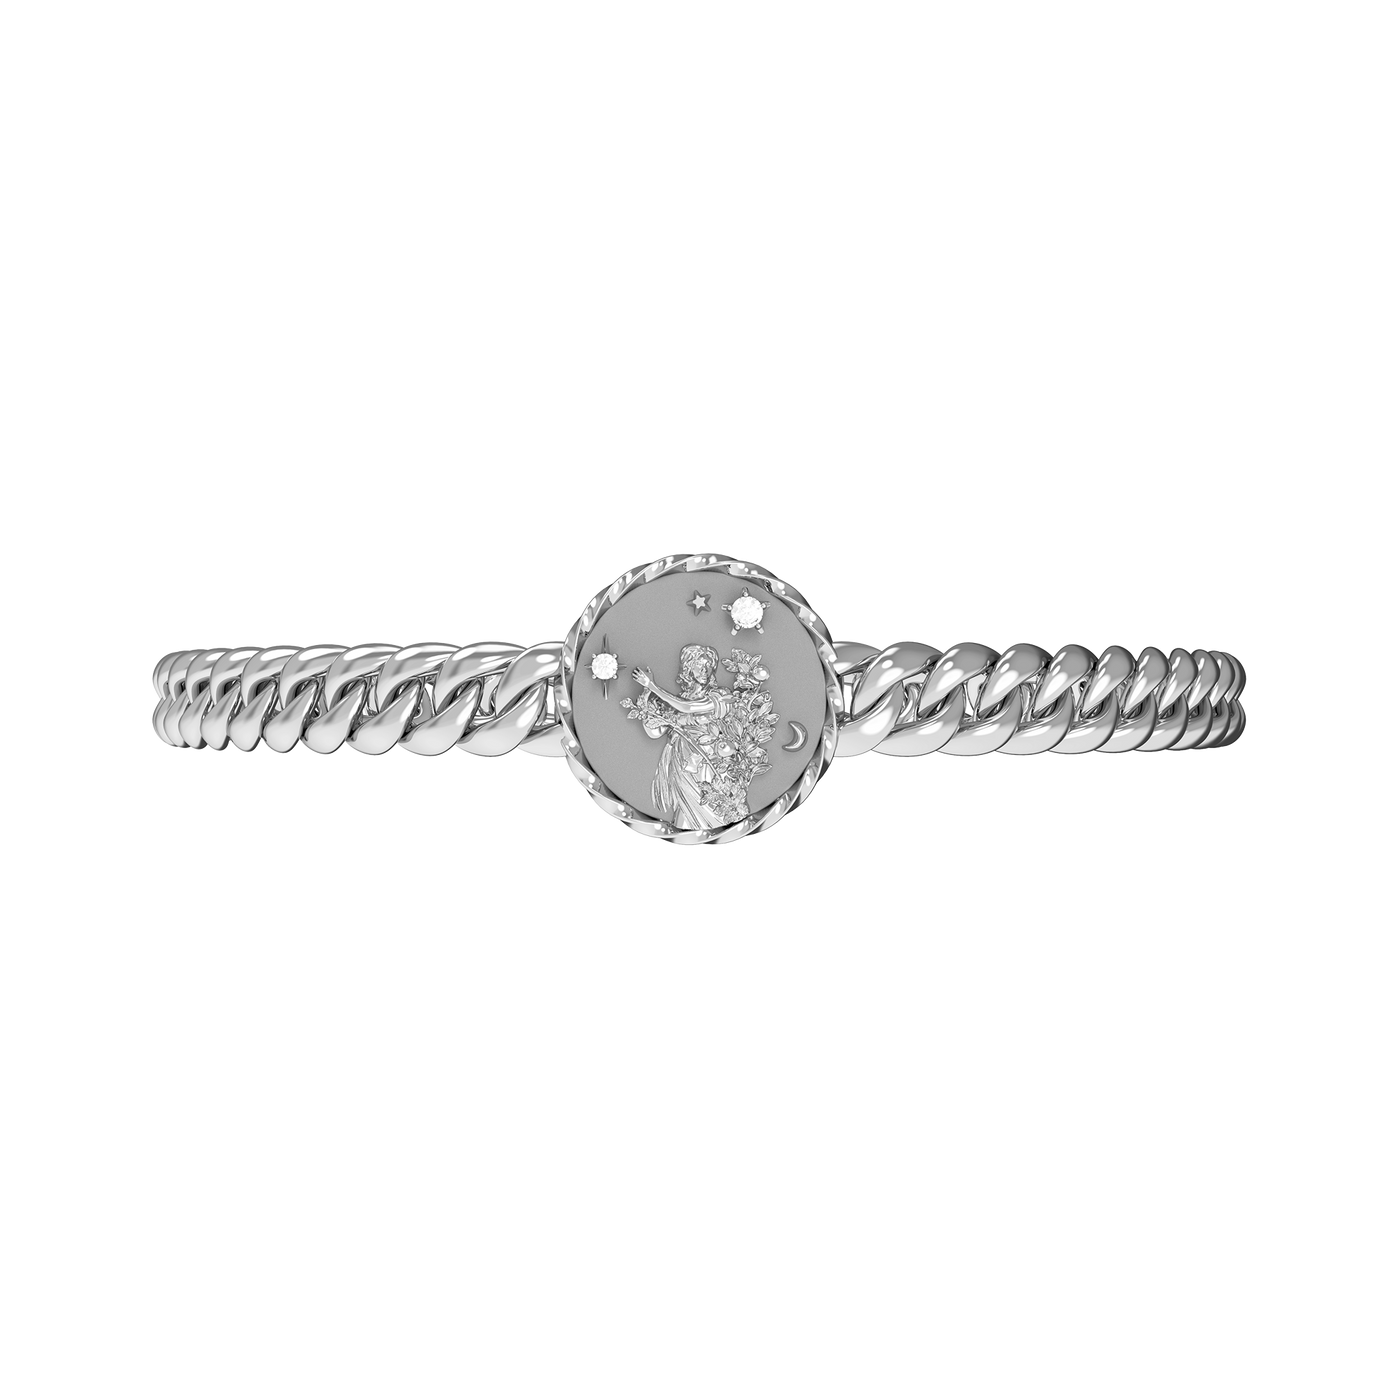 Jungfrau Amulett Kubanisches Armband